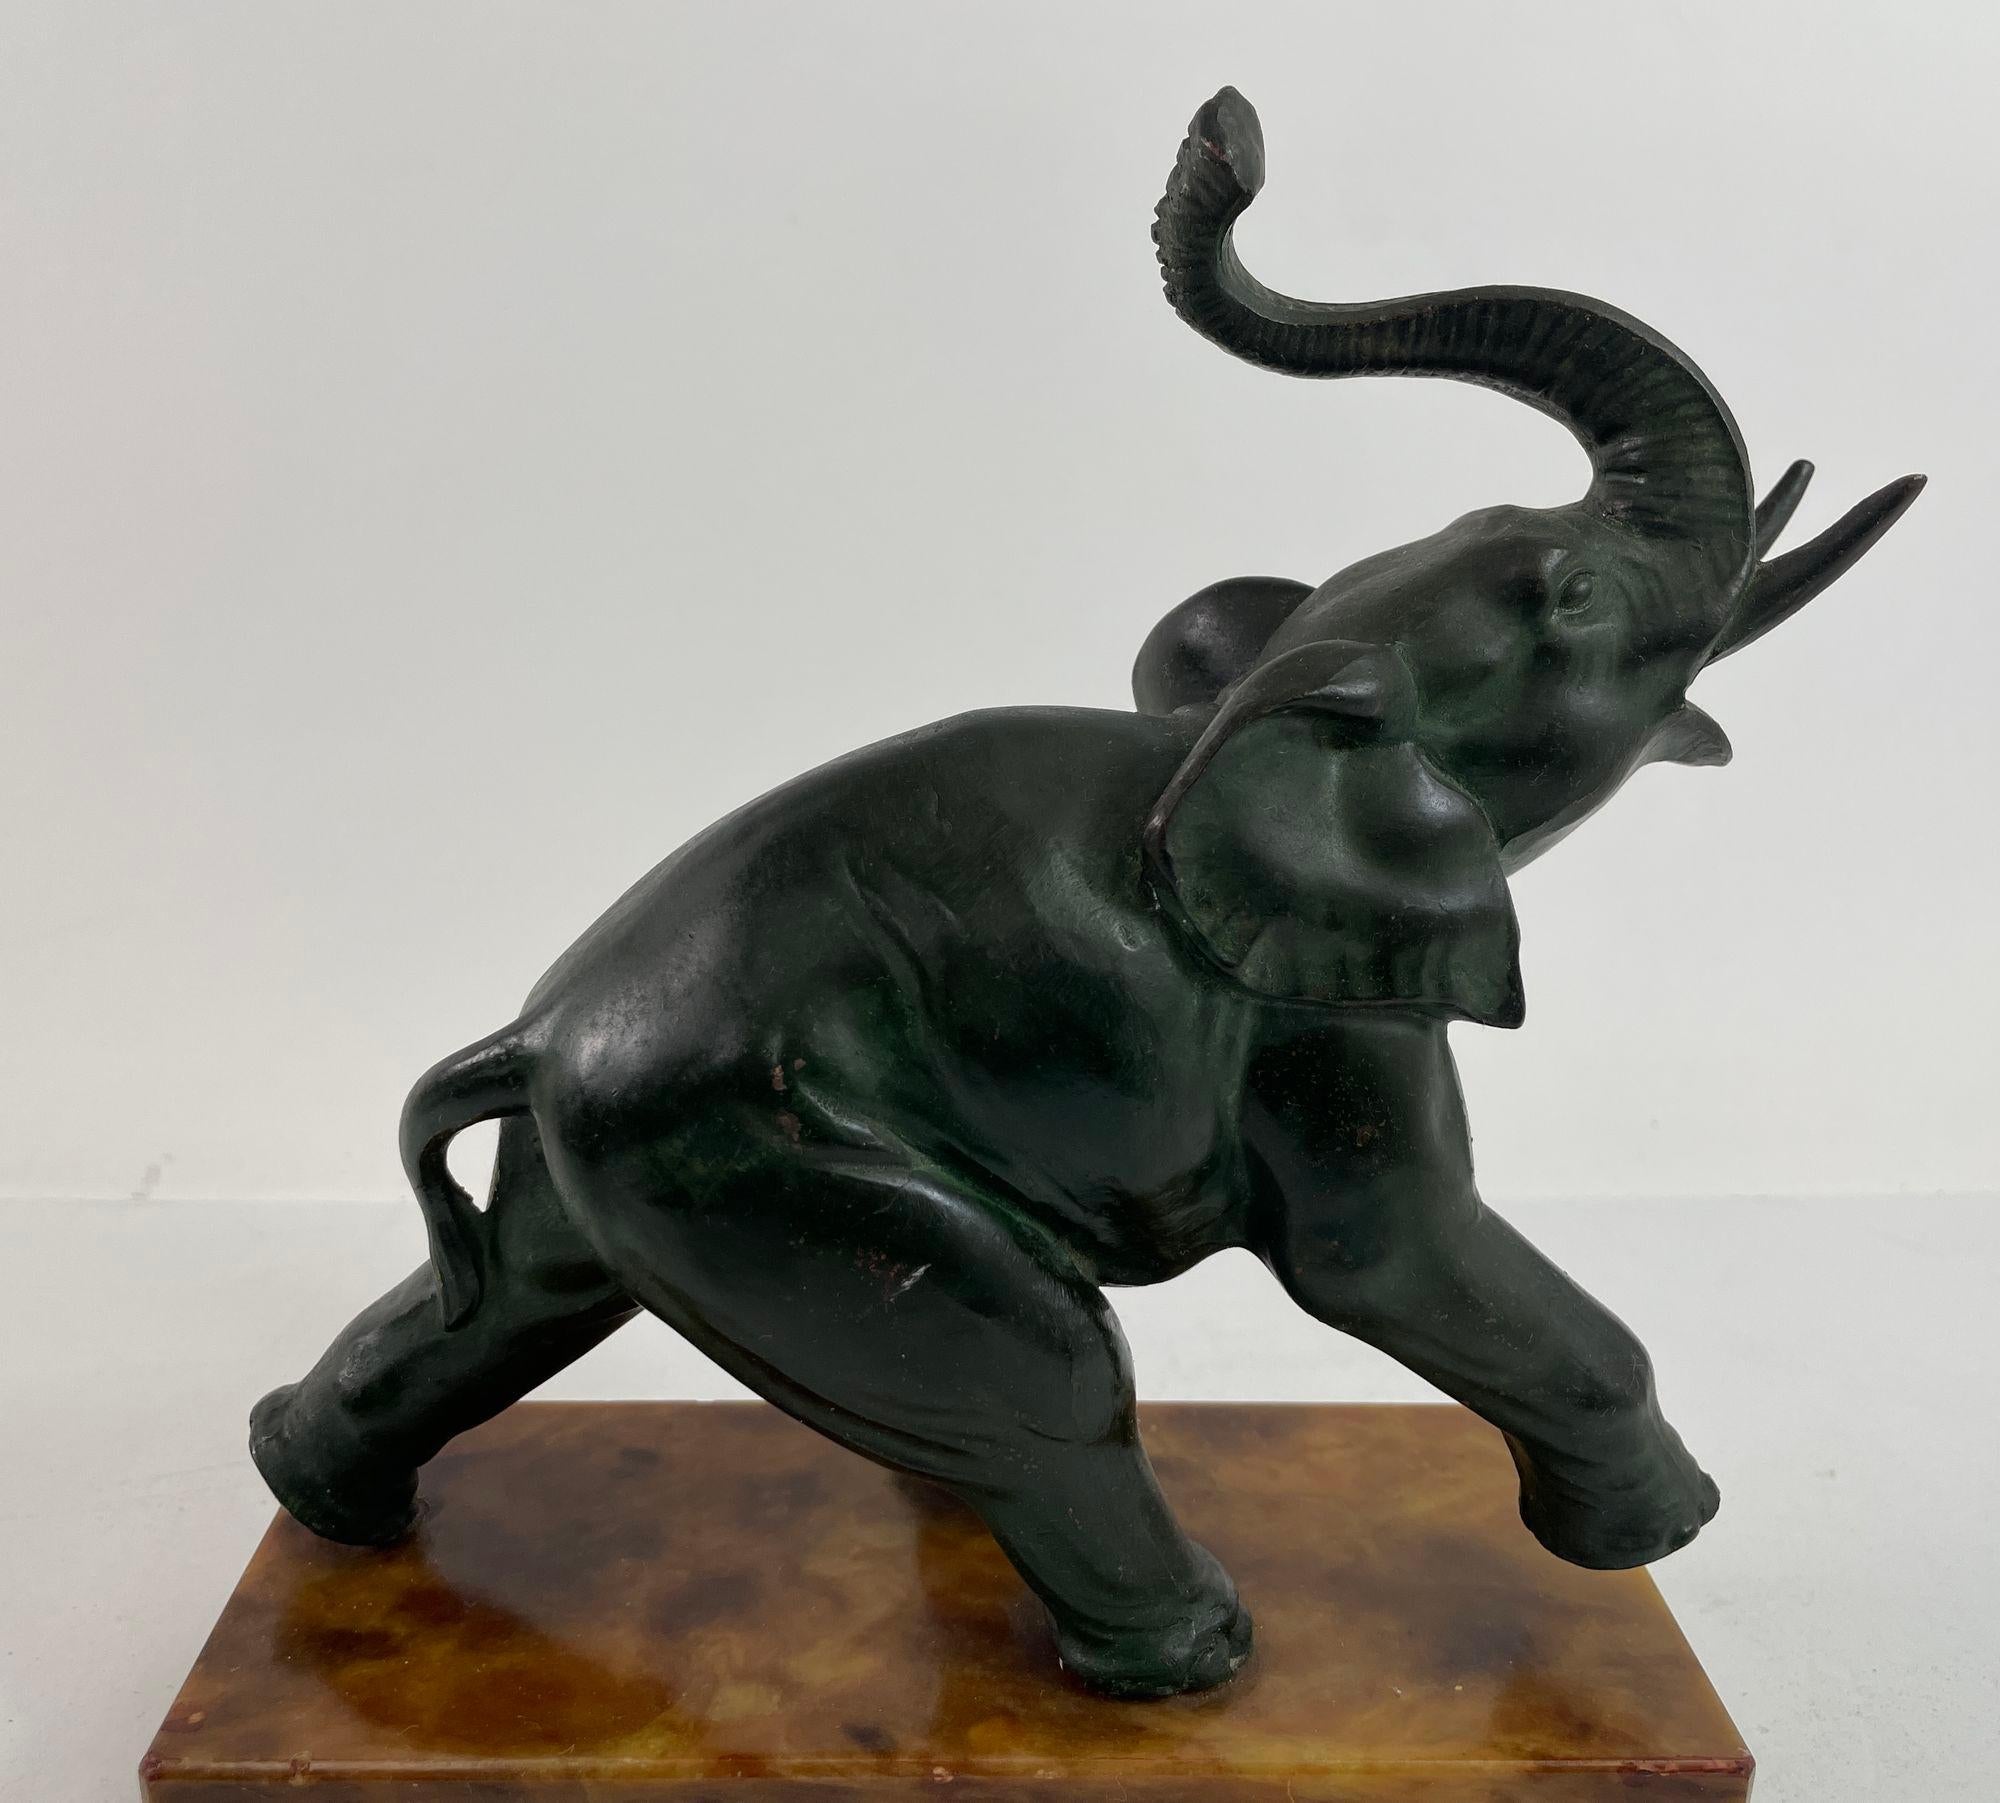 Sculpture d'éléphant en bronze Art Déco Italie.
Impressionnante sculpture en bronze Art déco d'un éléphant en fonte de bronze vert foncé sur une base en marbre brun.
Éléphant à la trompe relevée sur socle en marbre.
Feutre vert sur le fond avec